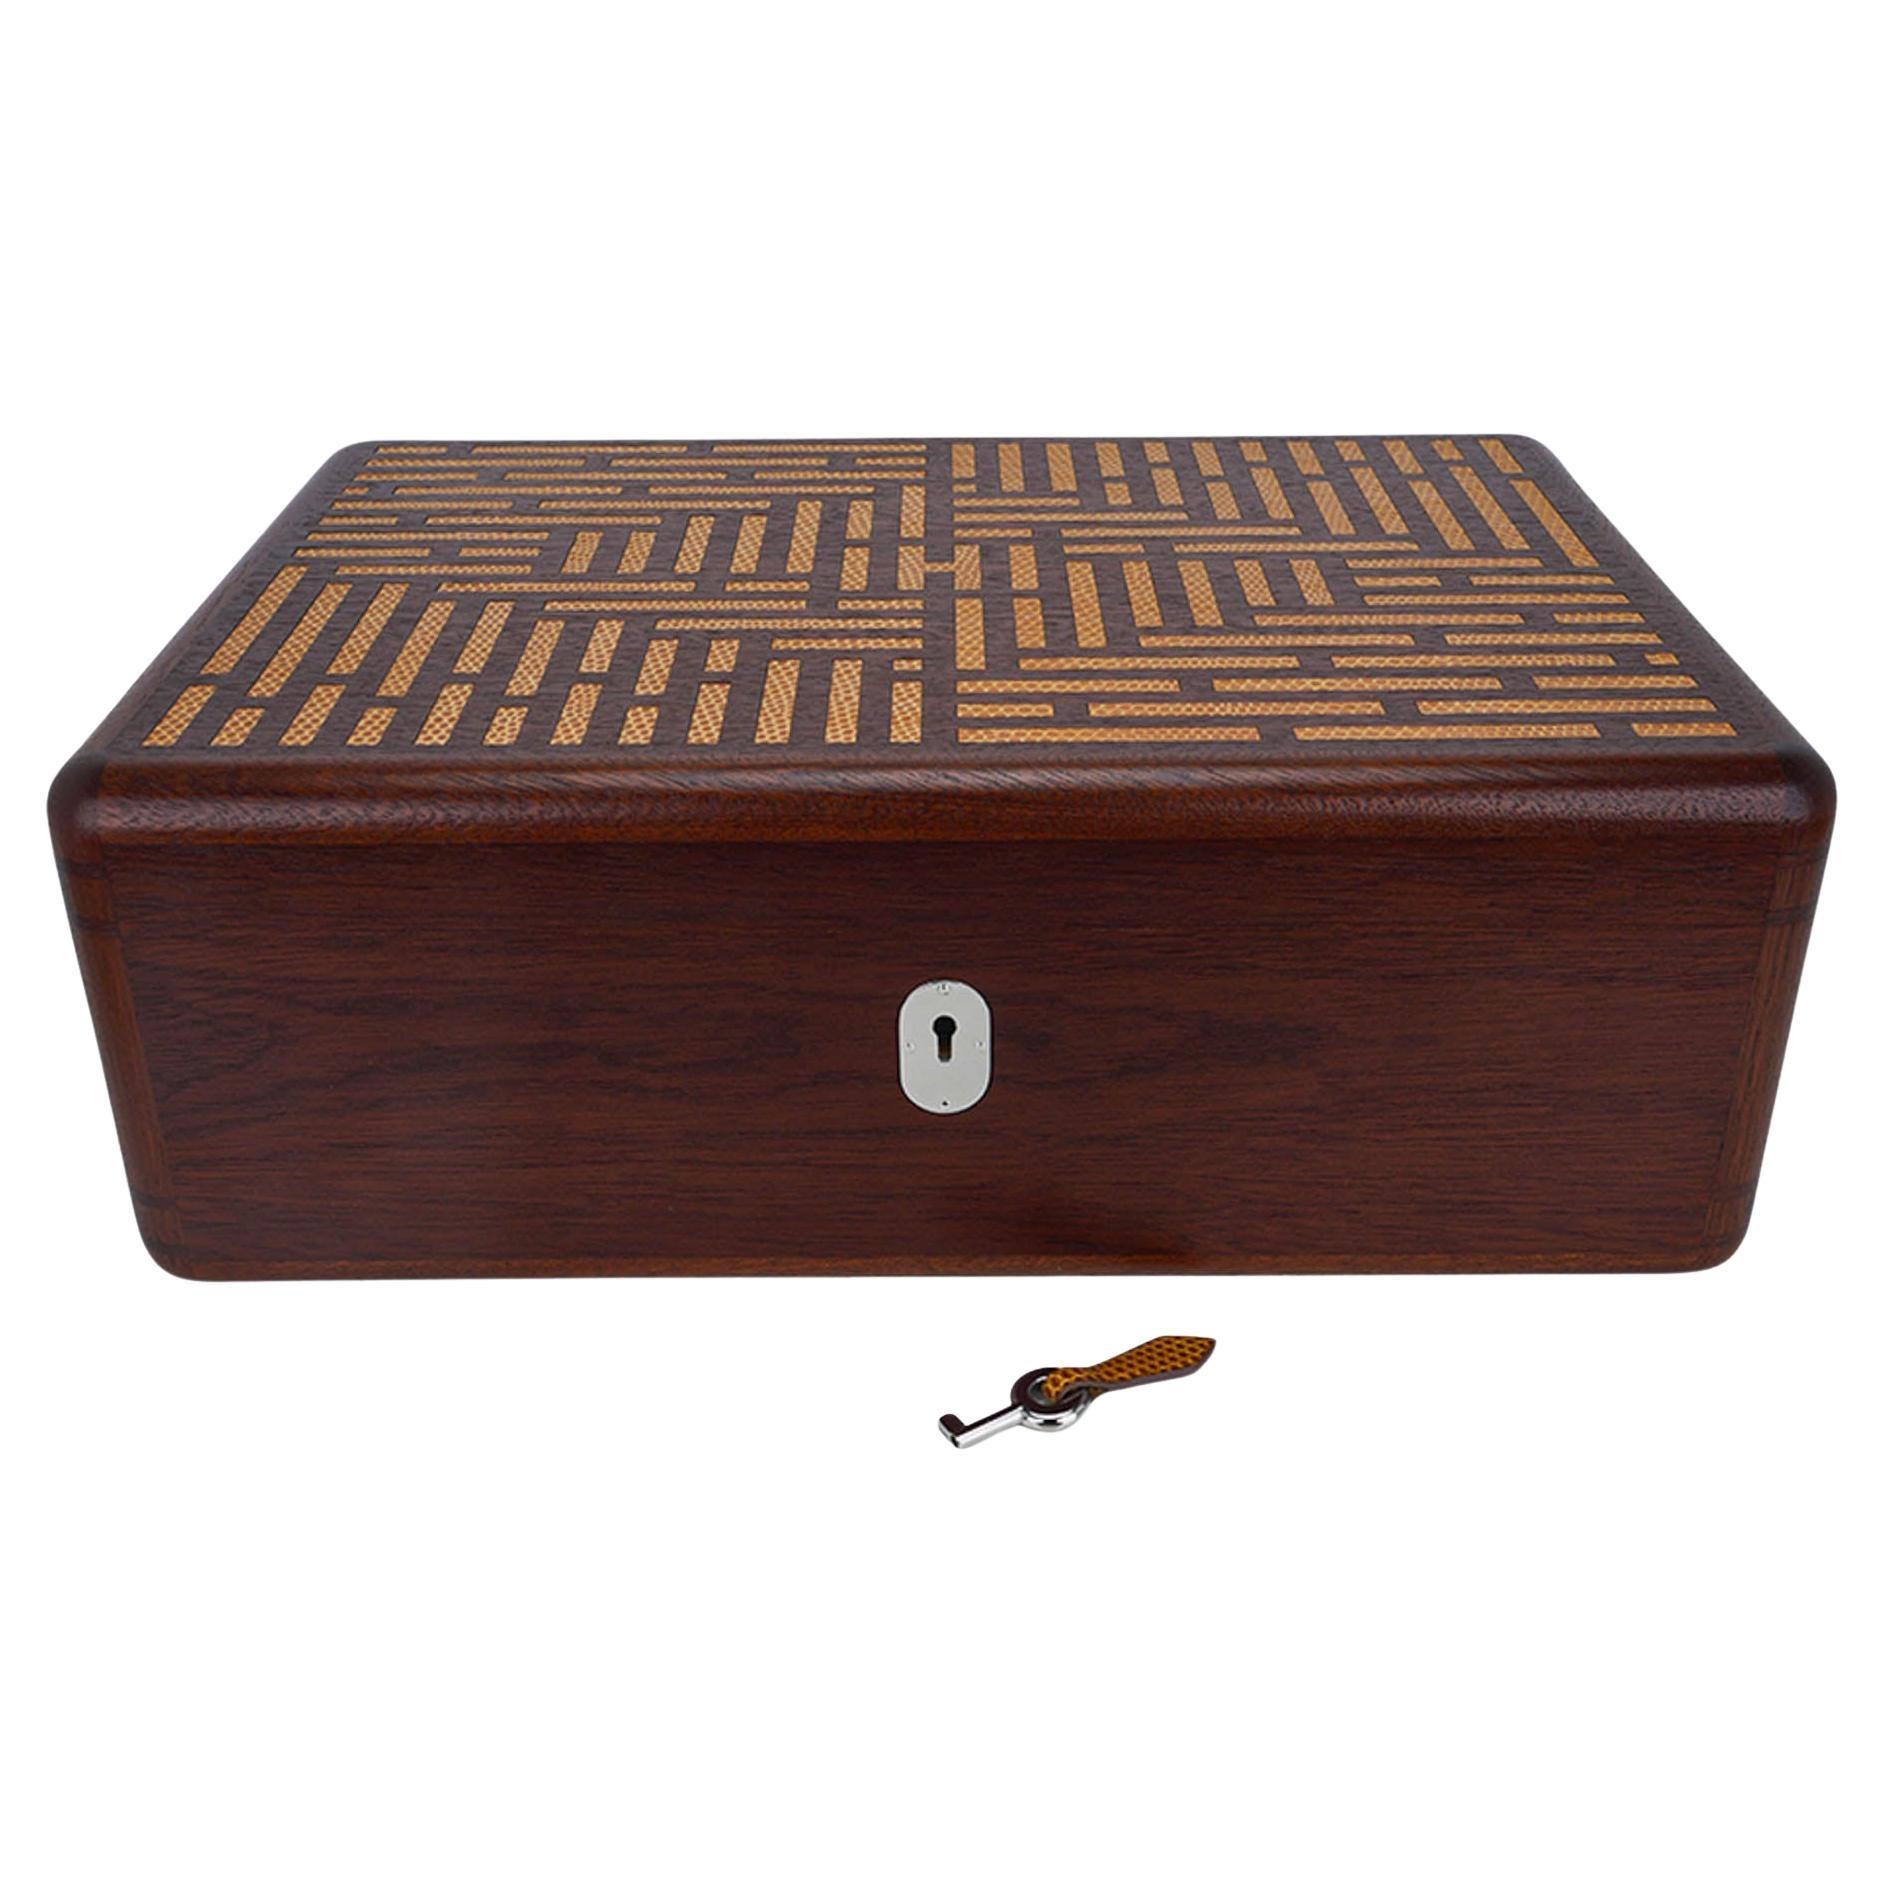 Mightychic propose une boîte à cigares Hermes Coffret a Cigares Humidor.
En bois de sycomore avec incrustation de lézard en sésame.
Les incrustations forment un 